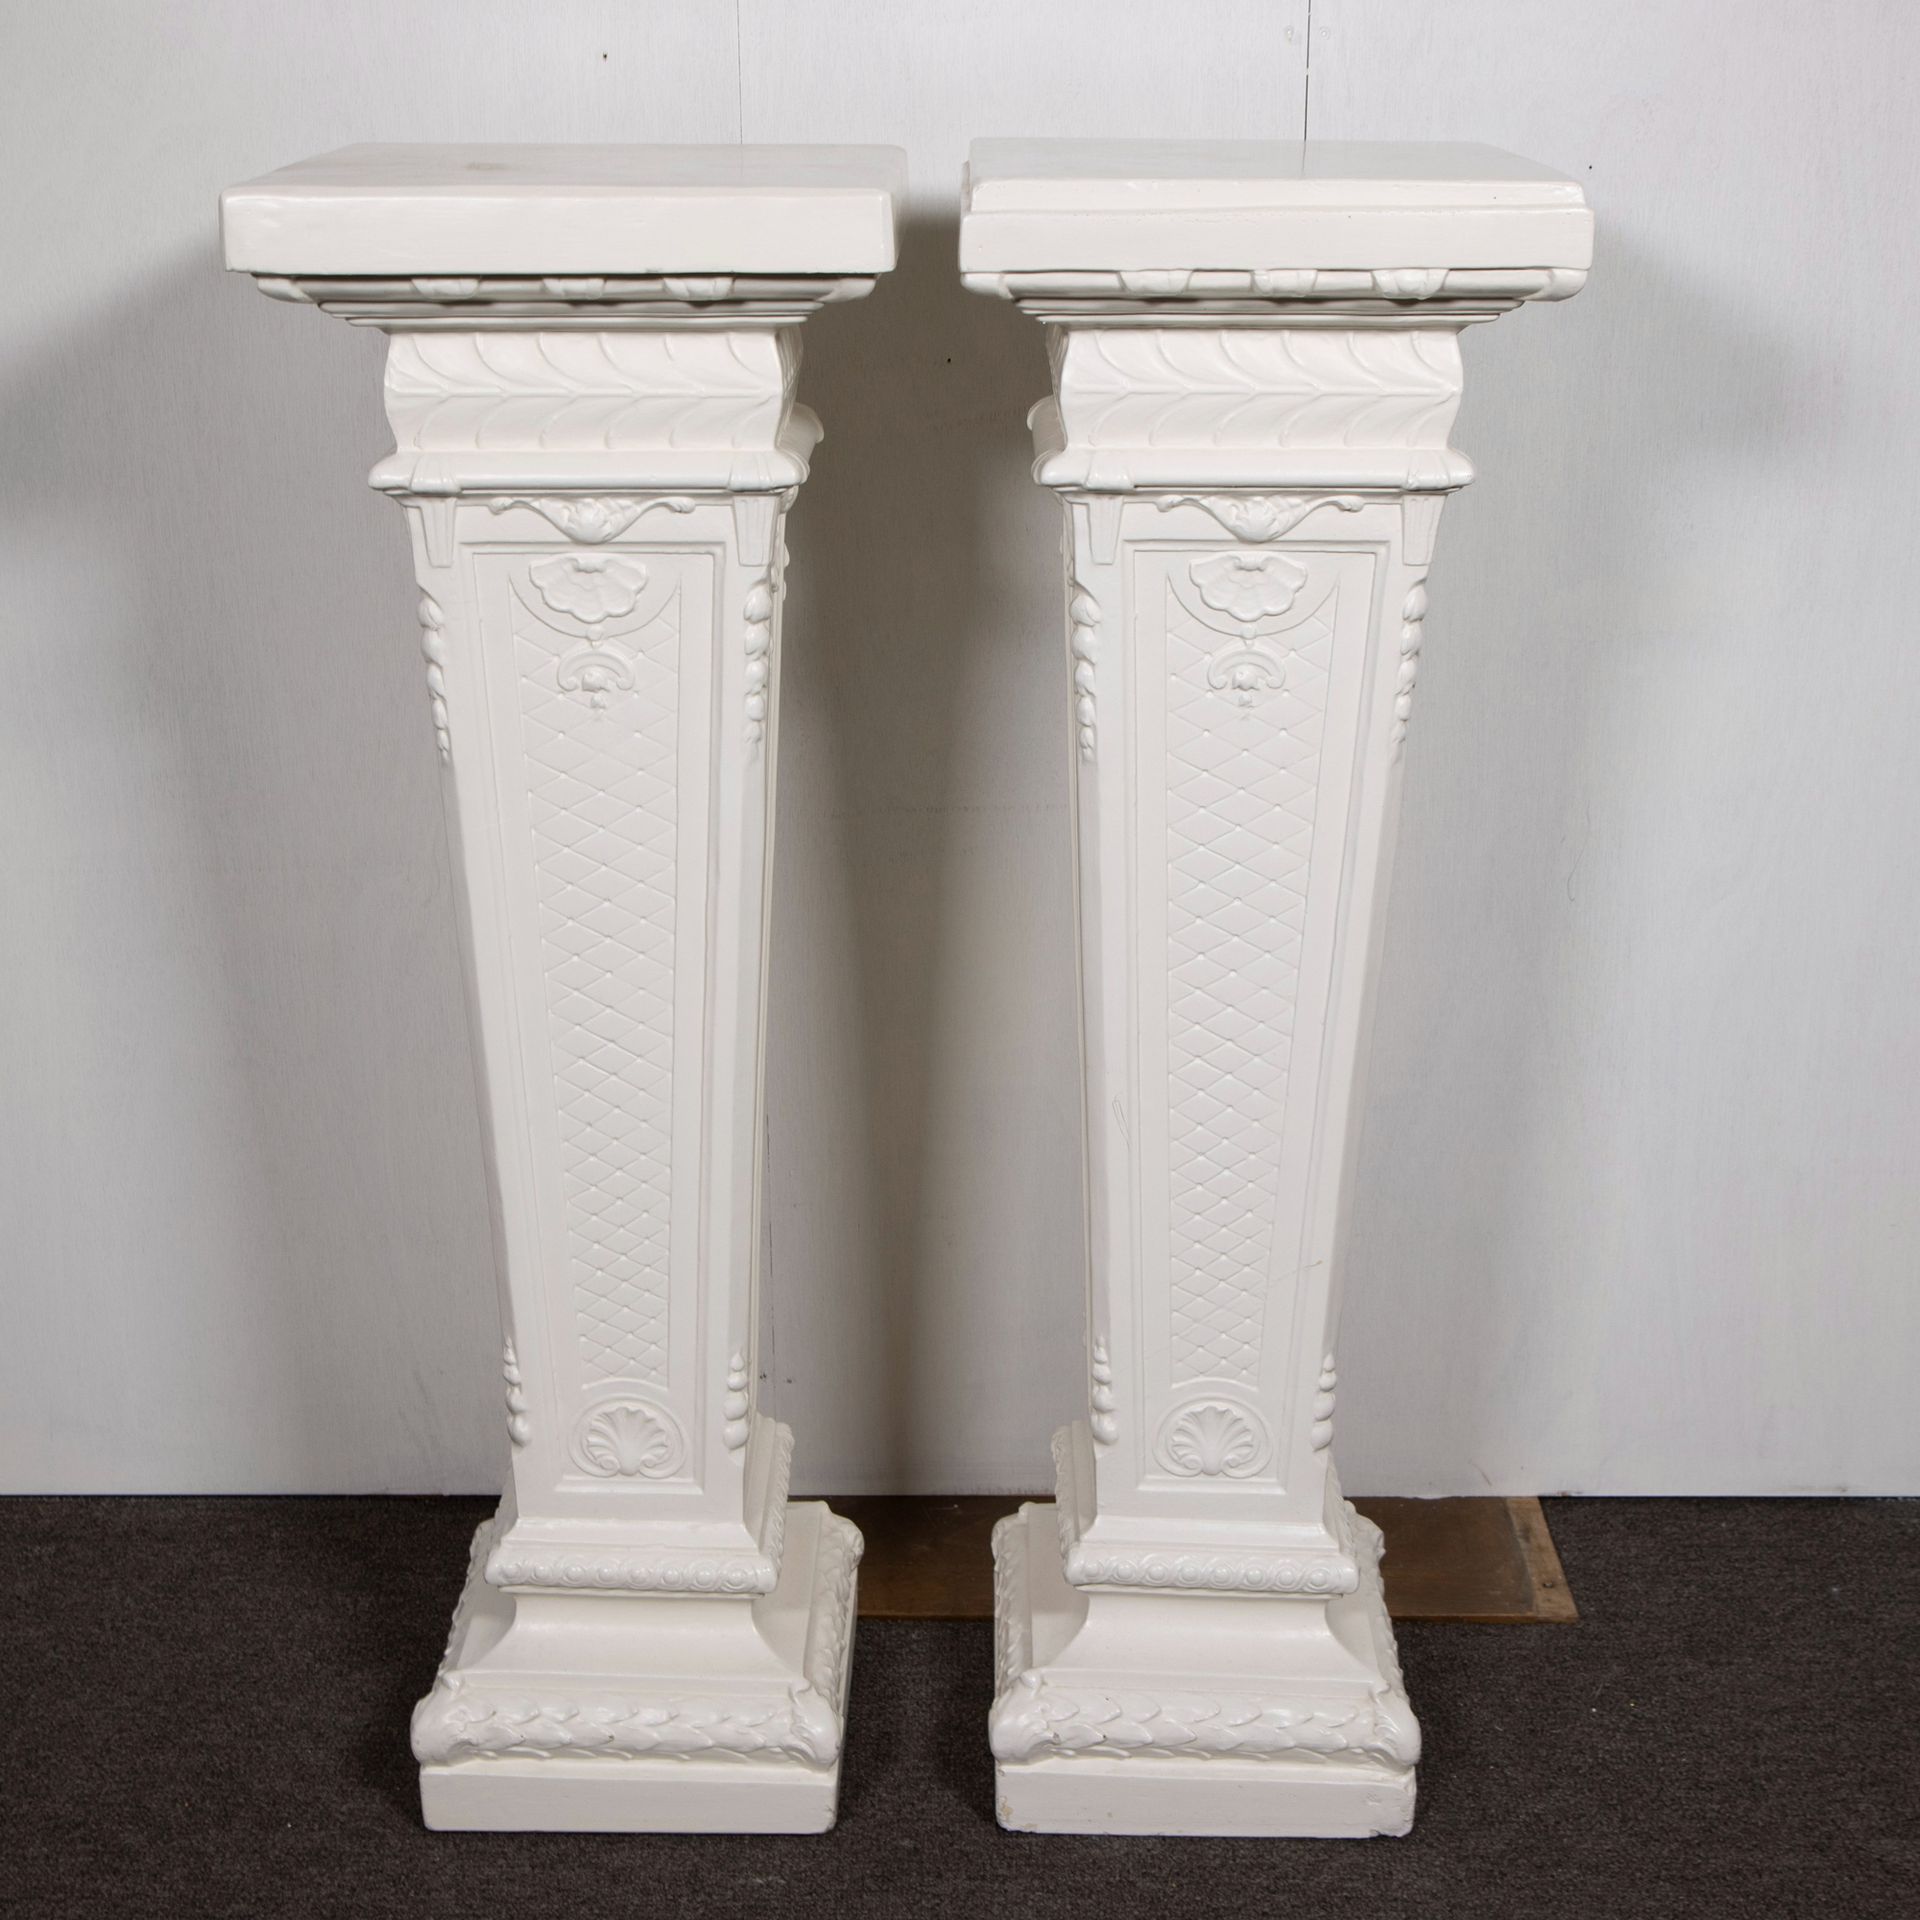 Null 白色石膏材质的情侣座
Koppel piëdestalles in wit gepatineerd gips
H 107.5 cm